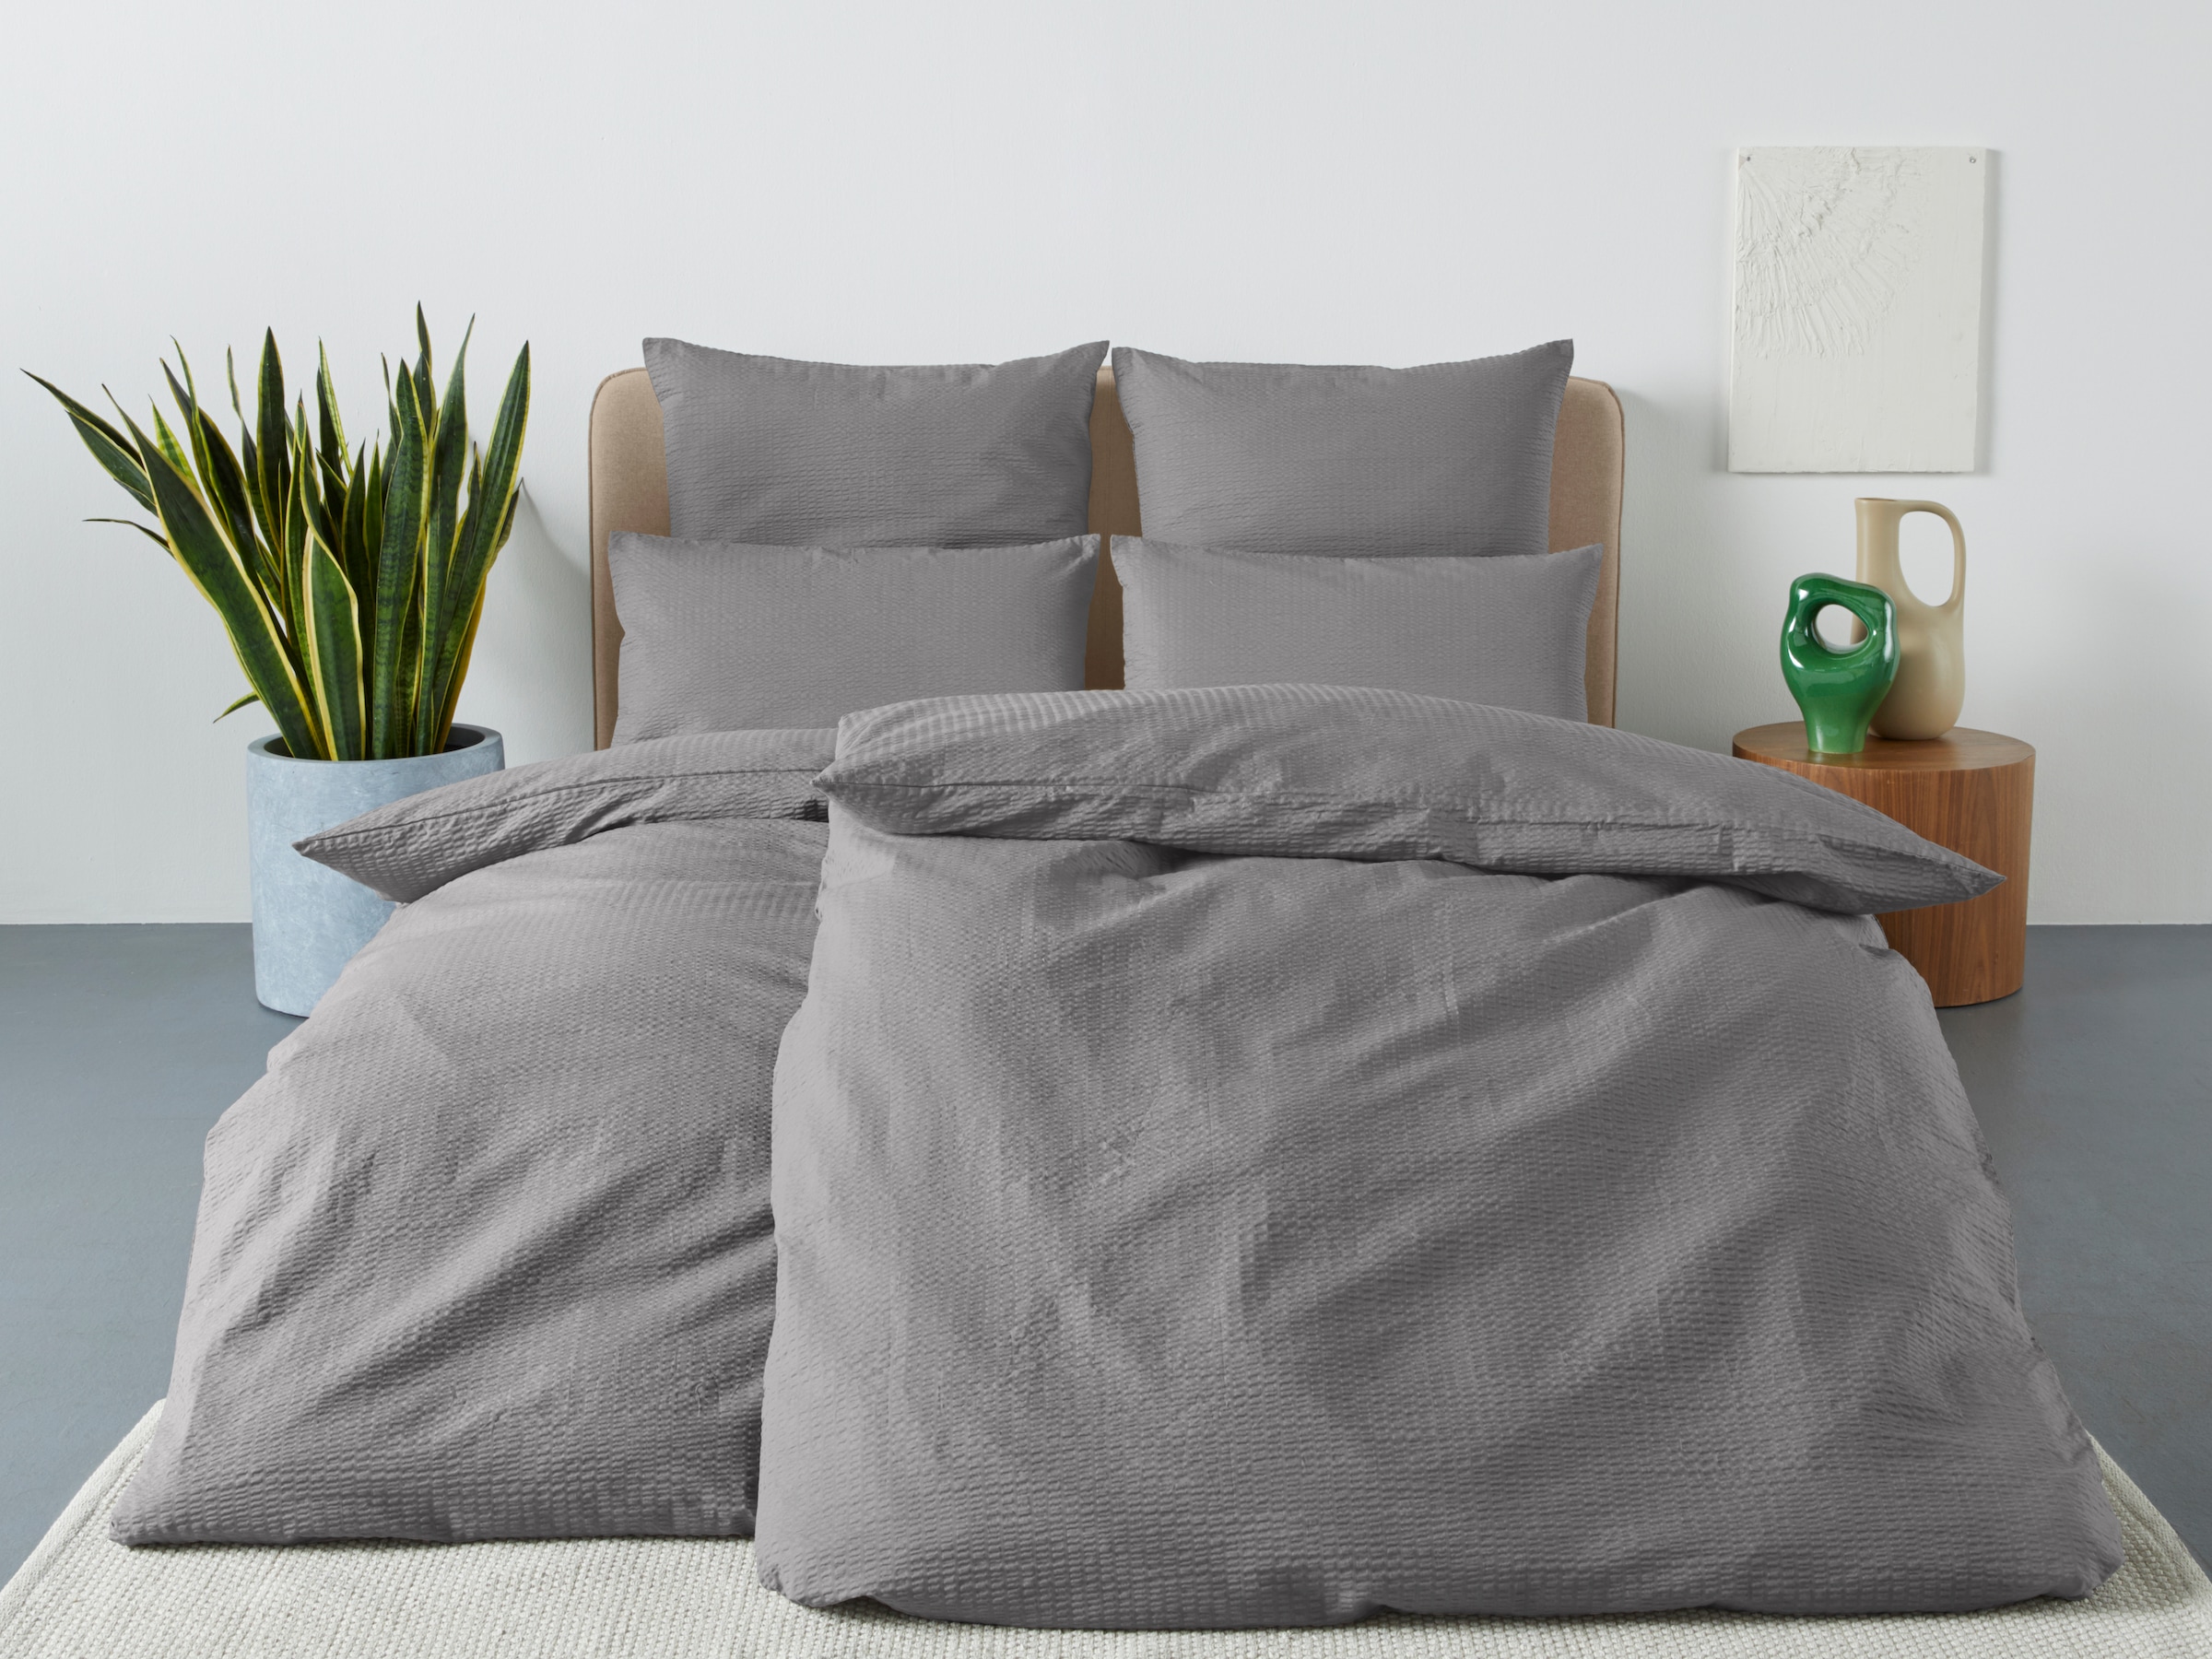 andas Bettwäsche »Sari2 in Gr. 135x200 oder 155x220 cm«, (2 tlg.), aus Baumwolle, uni Bettwäsche in Seersucker Qualität ideal für Sommer